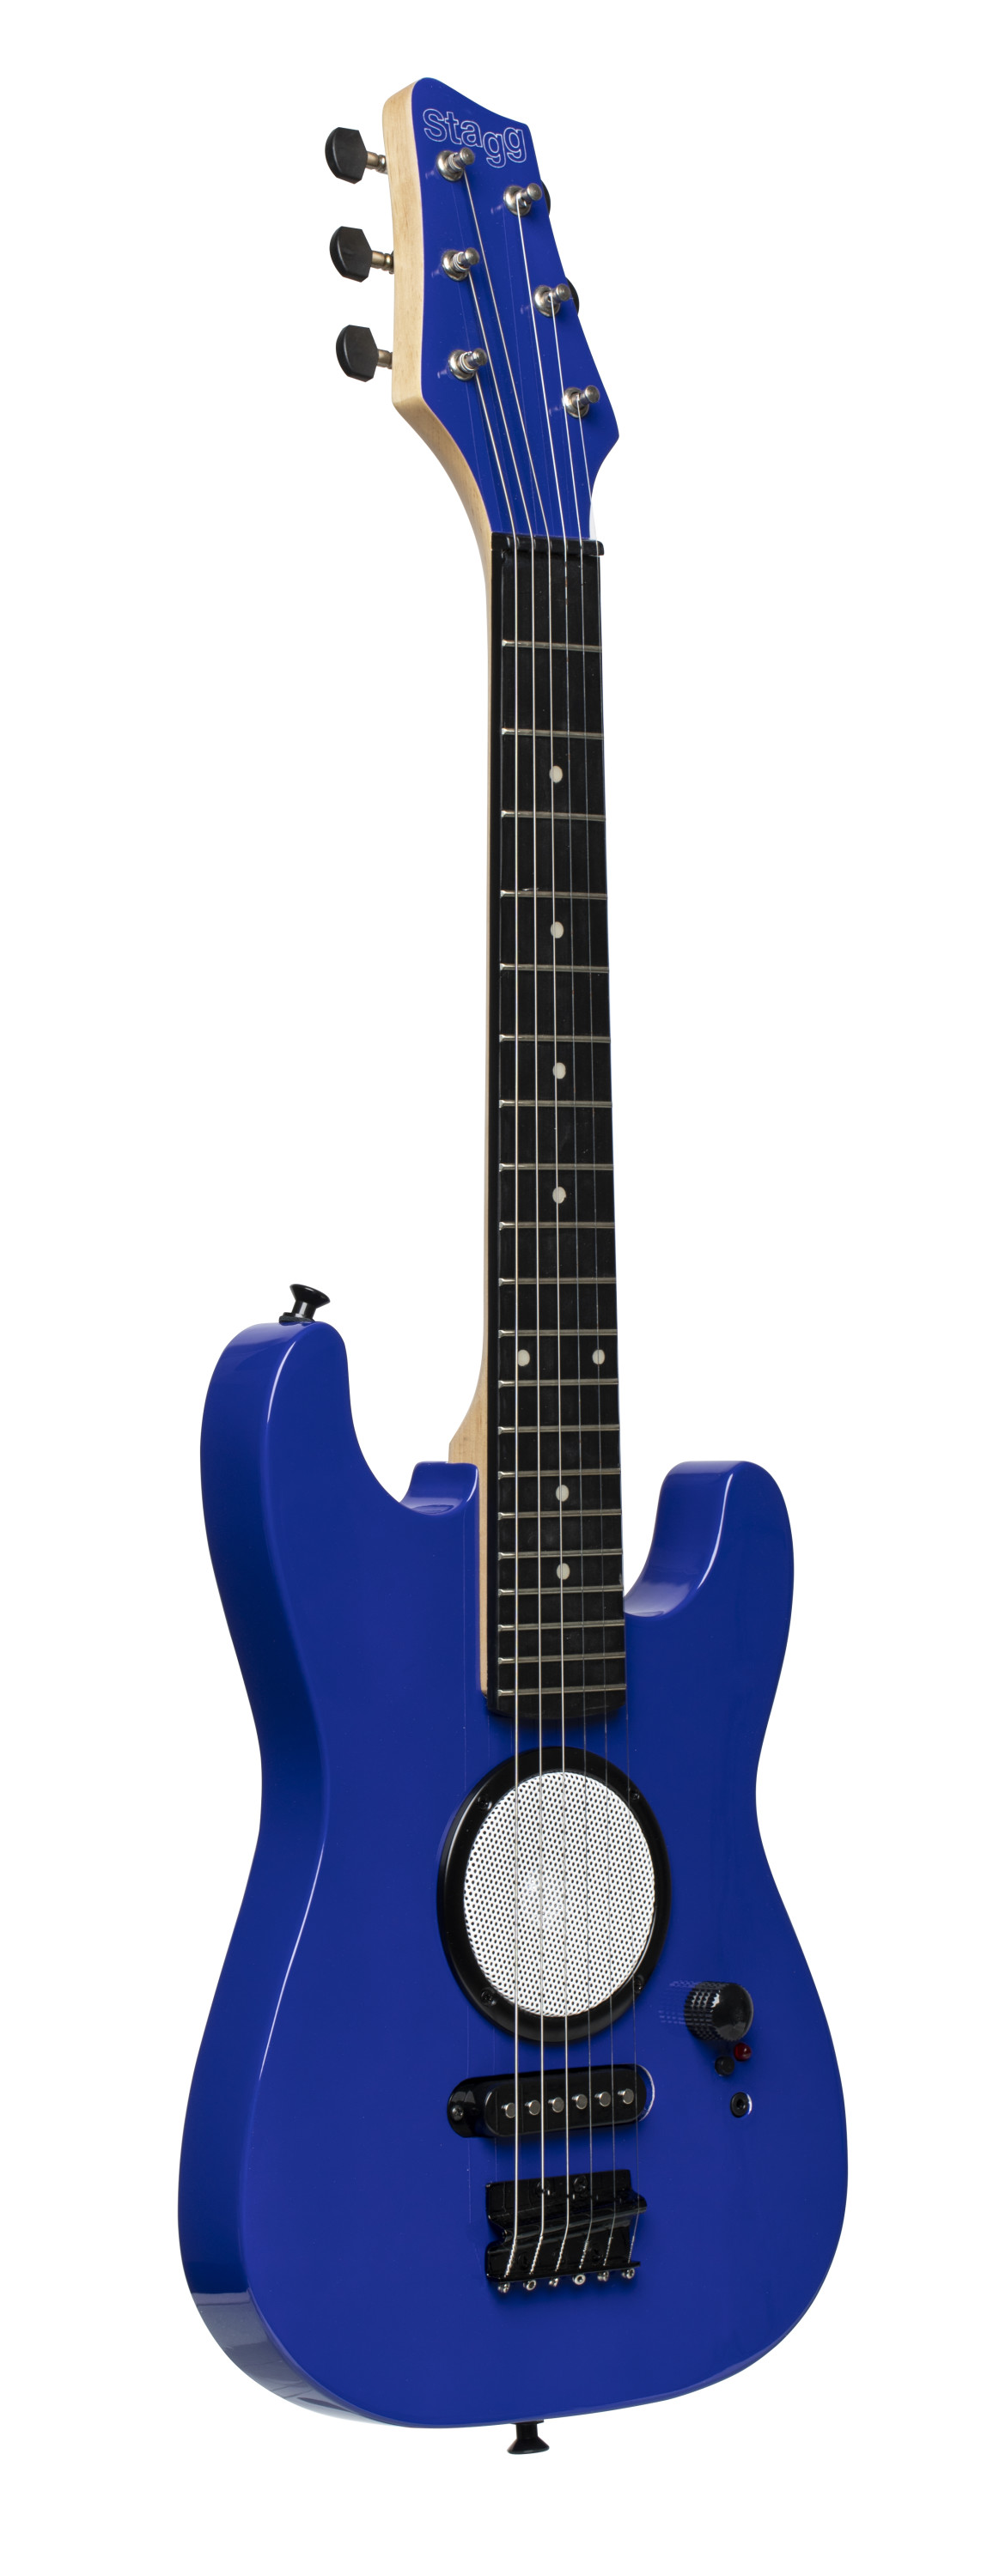 Dětská elektrická kytara se zabudovaným zesilovačem modrá